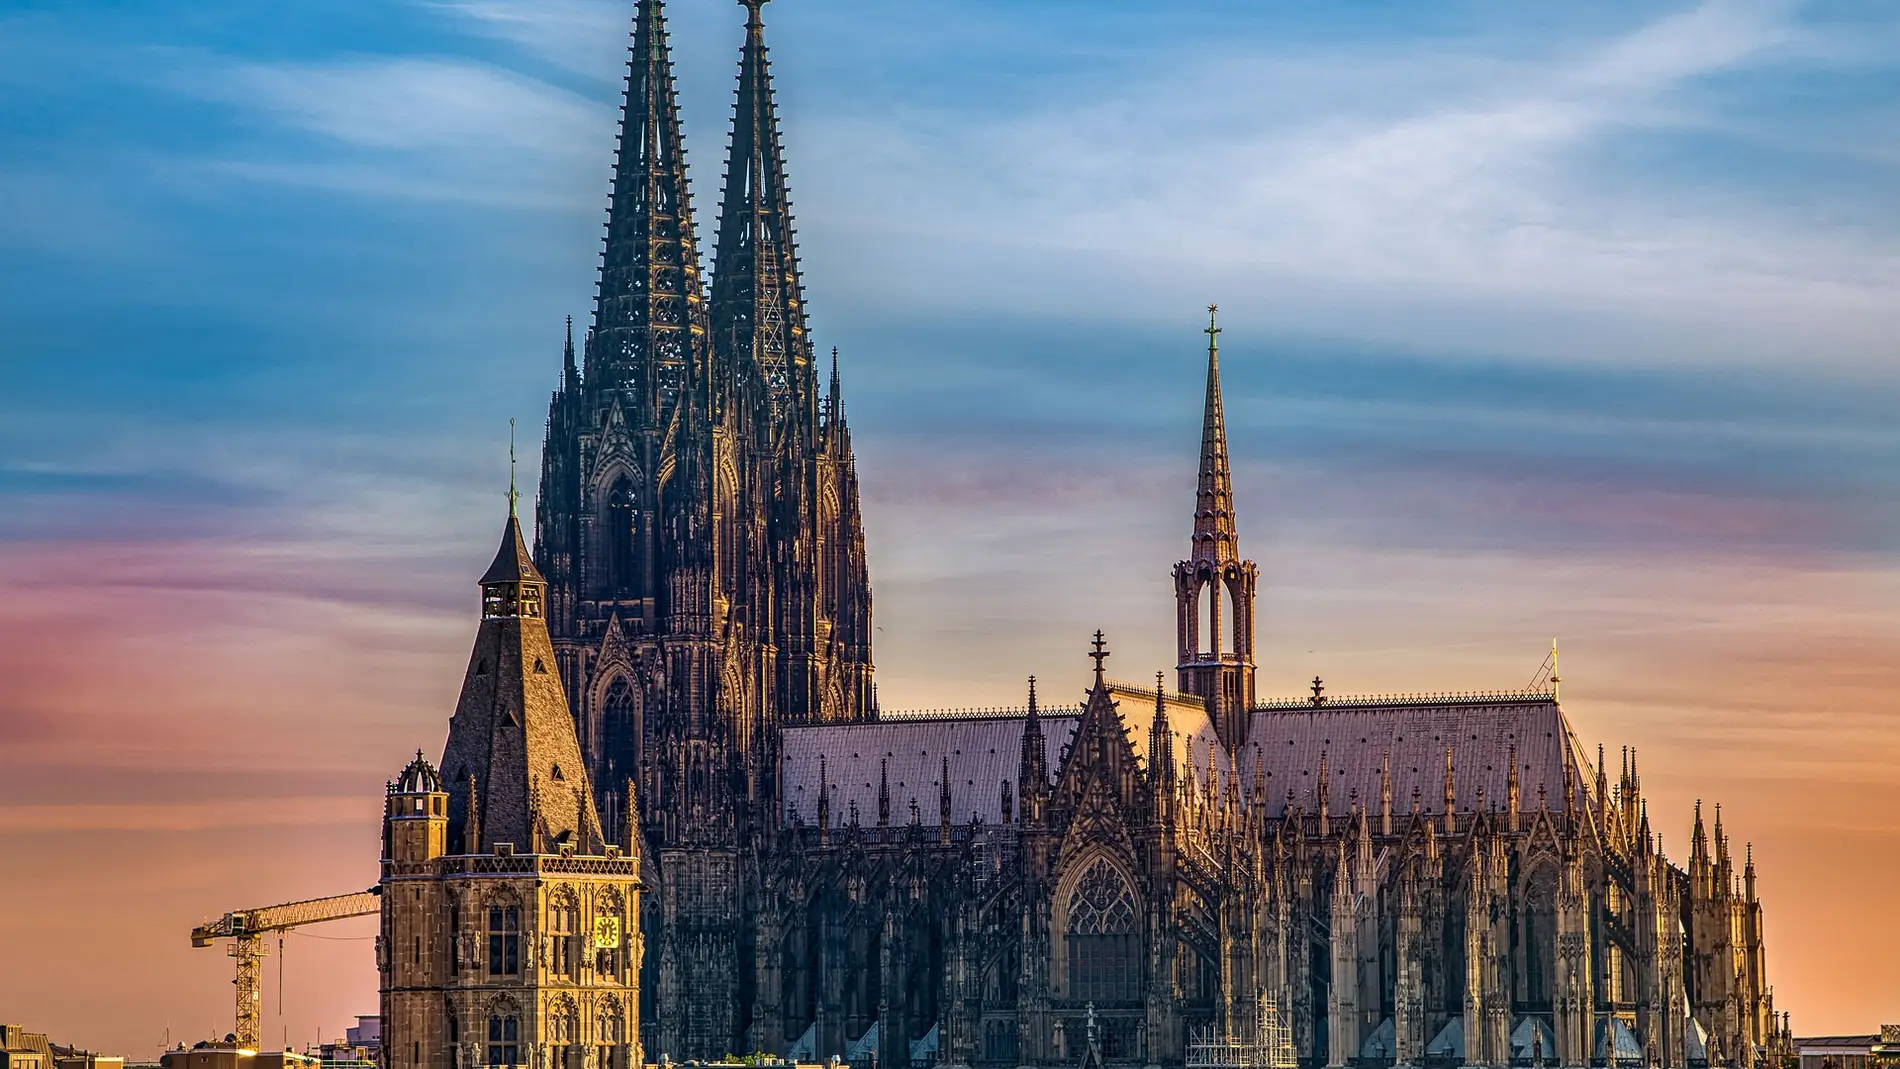 Catedral de Colonia, una de las más bonitas del mundo